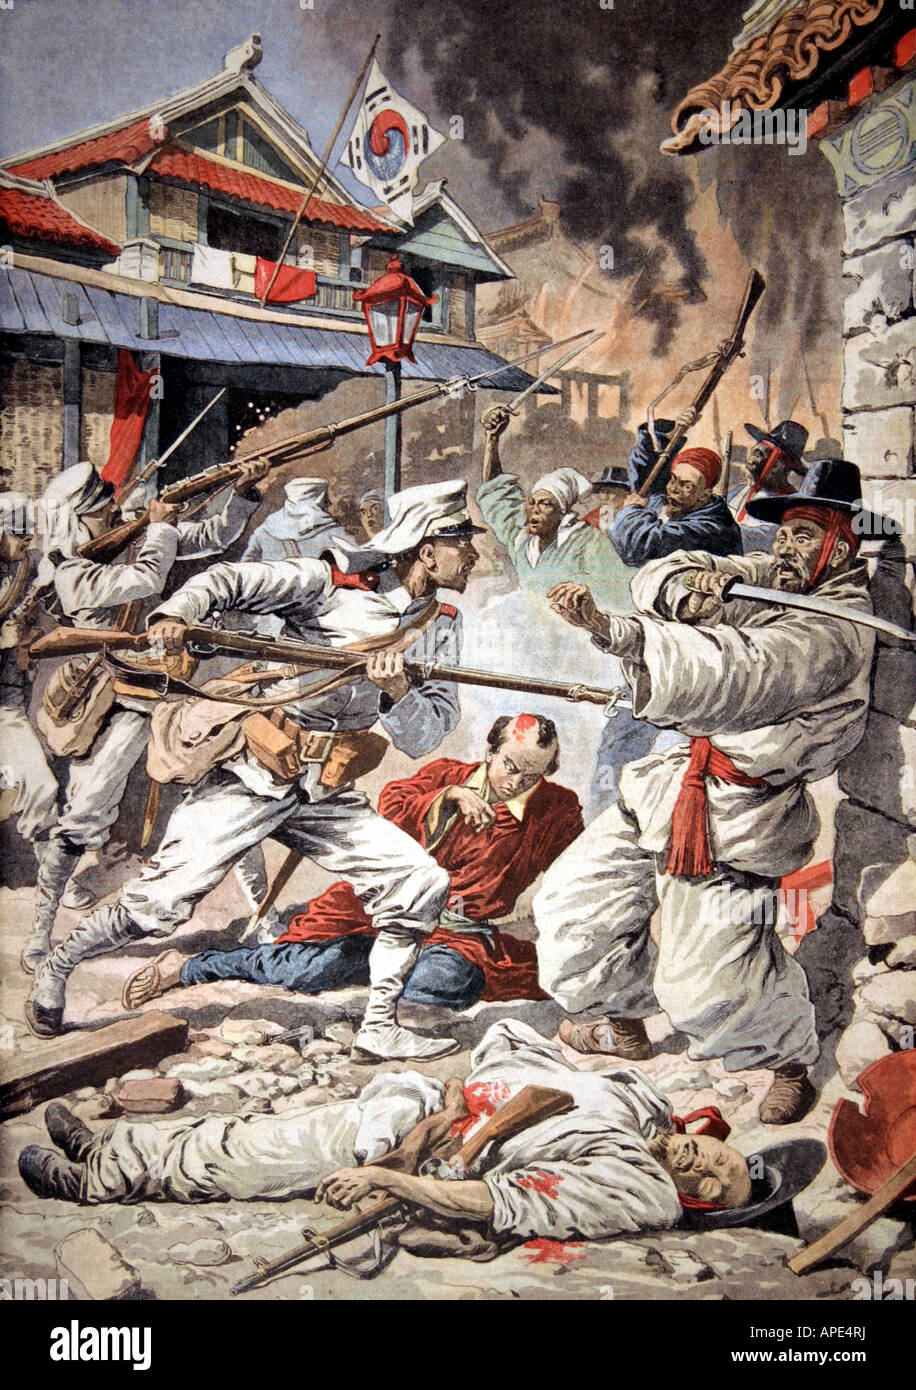 Géographie / voyage, Corée, riot 1907, les soldats japonais attaquent la révolte, gravure colorée, 'le petit Journal', 4.8.1907, Banque D'Images